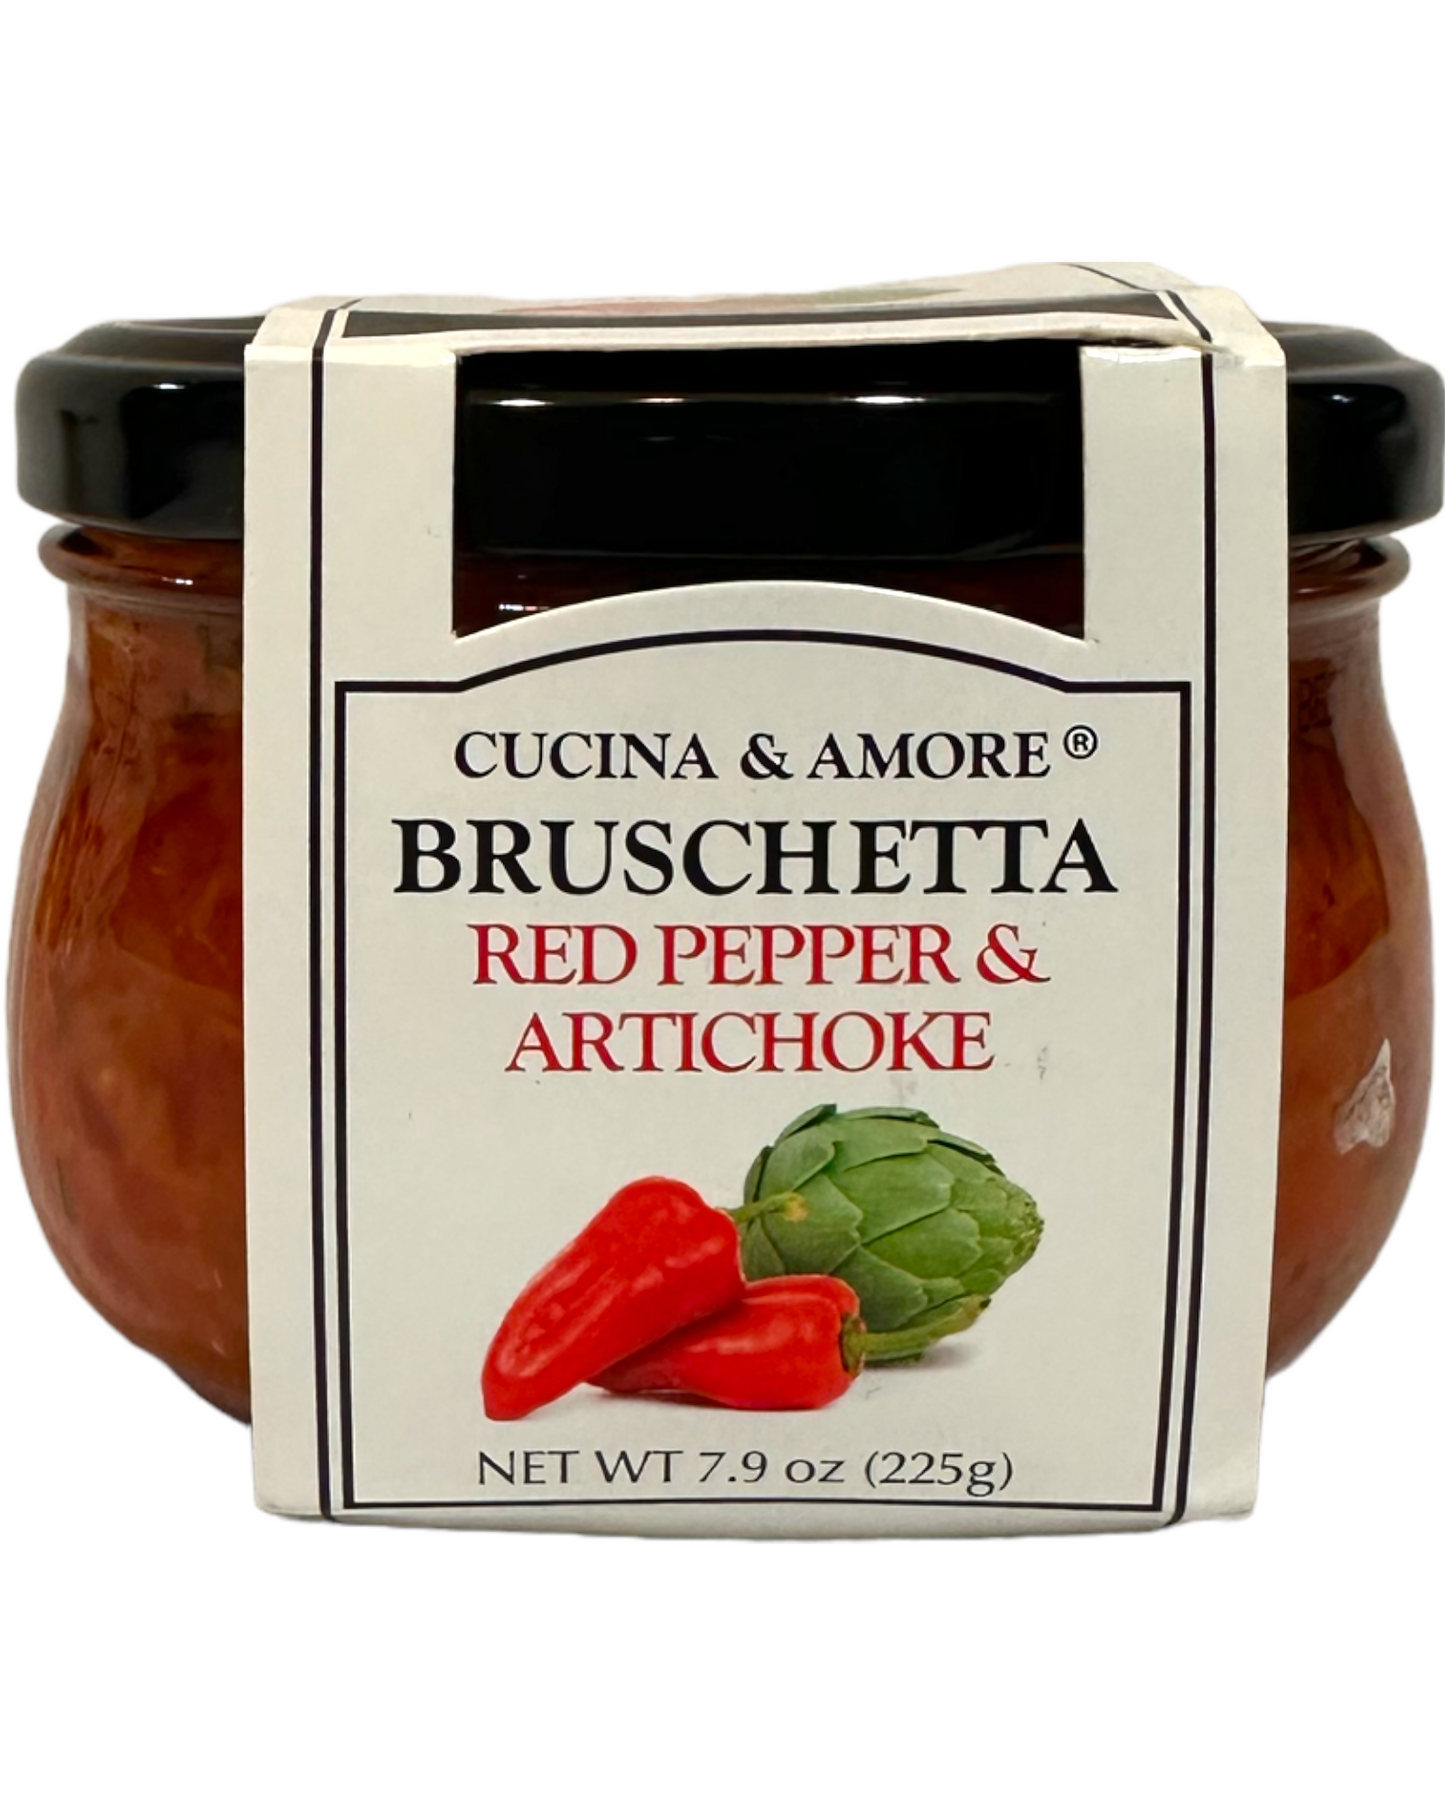 Cucina & Amore Red Pepper & Artichoke Bruschetta